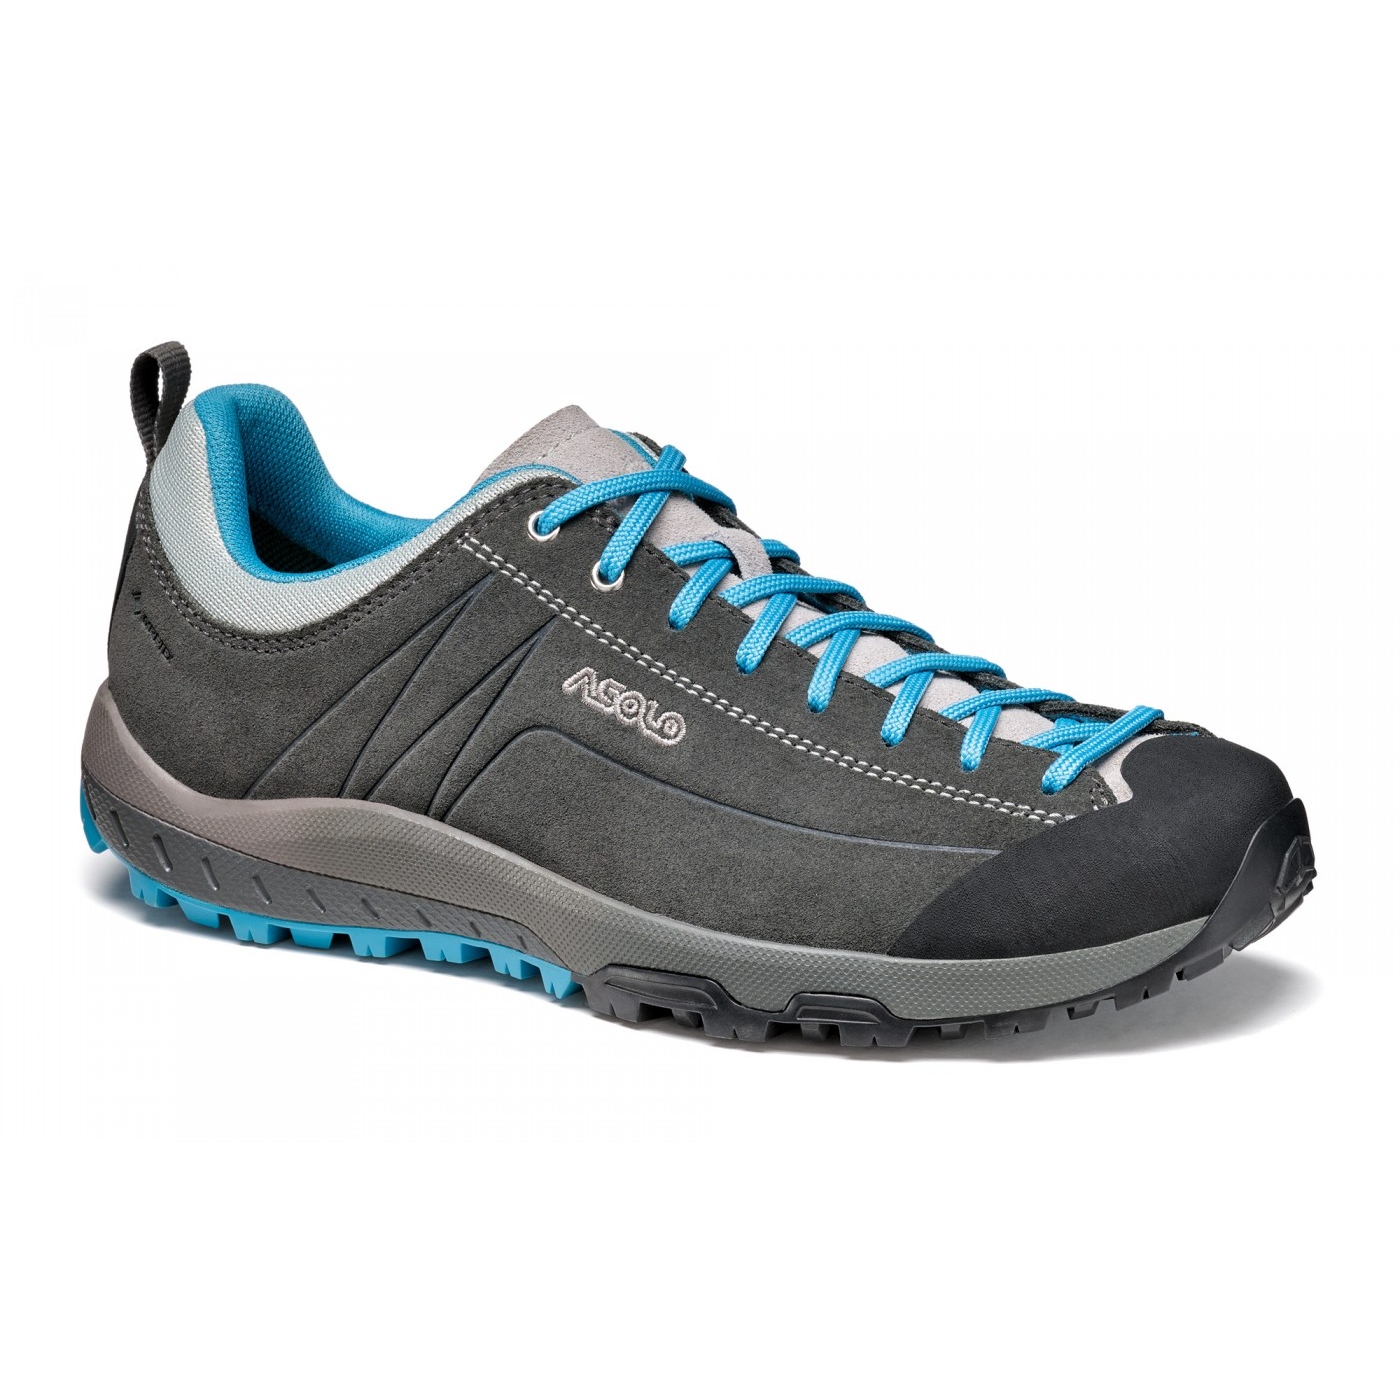 Produktbild von Asolo Space GV Schuhe Damen - graphite/cyan blue